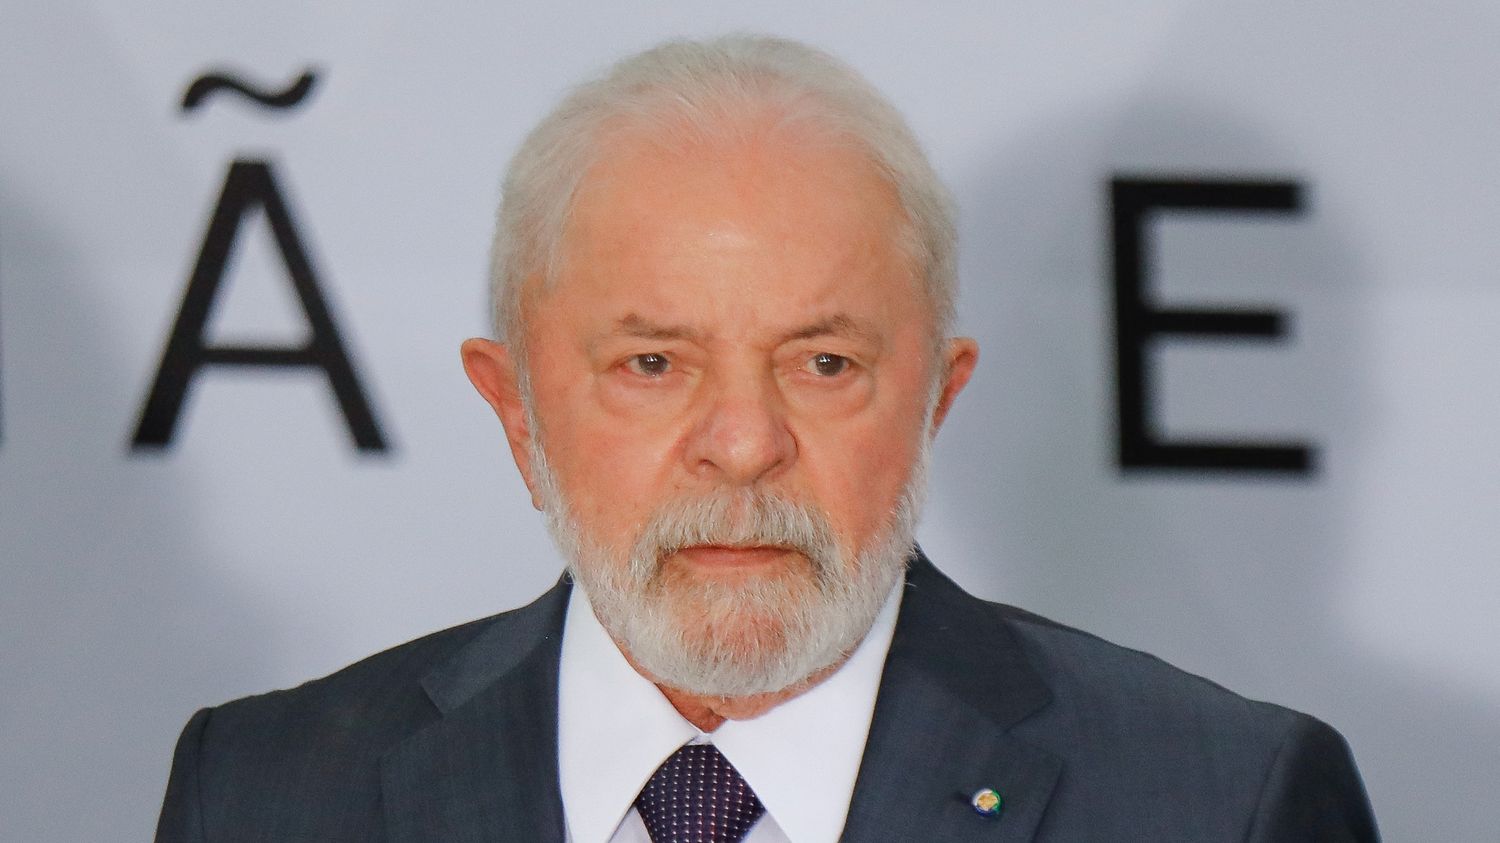 En visite en Chine, le président brésilien Lula envisage une alliance avec Pékin sur l’Ukraine et l’économie